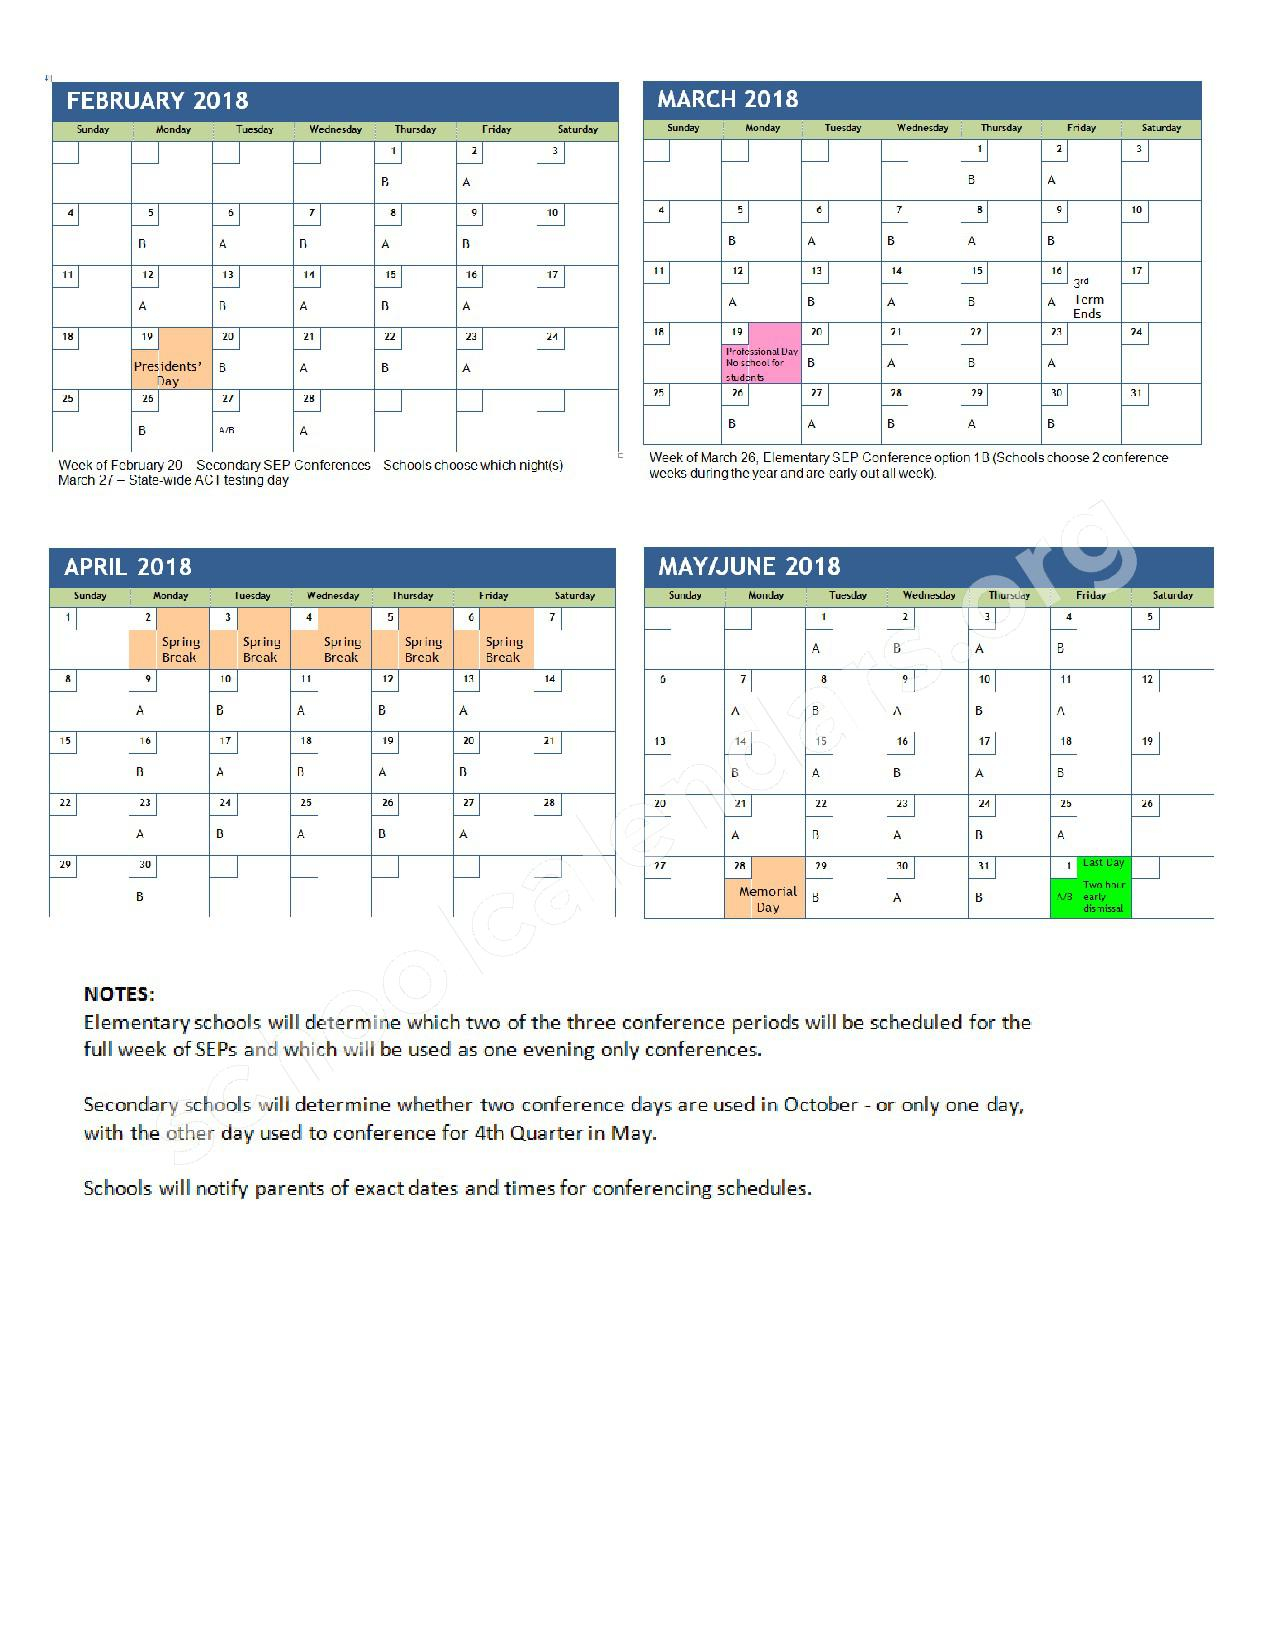 Davis School District Calendar 2022 - Schoolcalendars.net